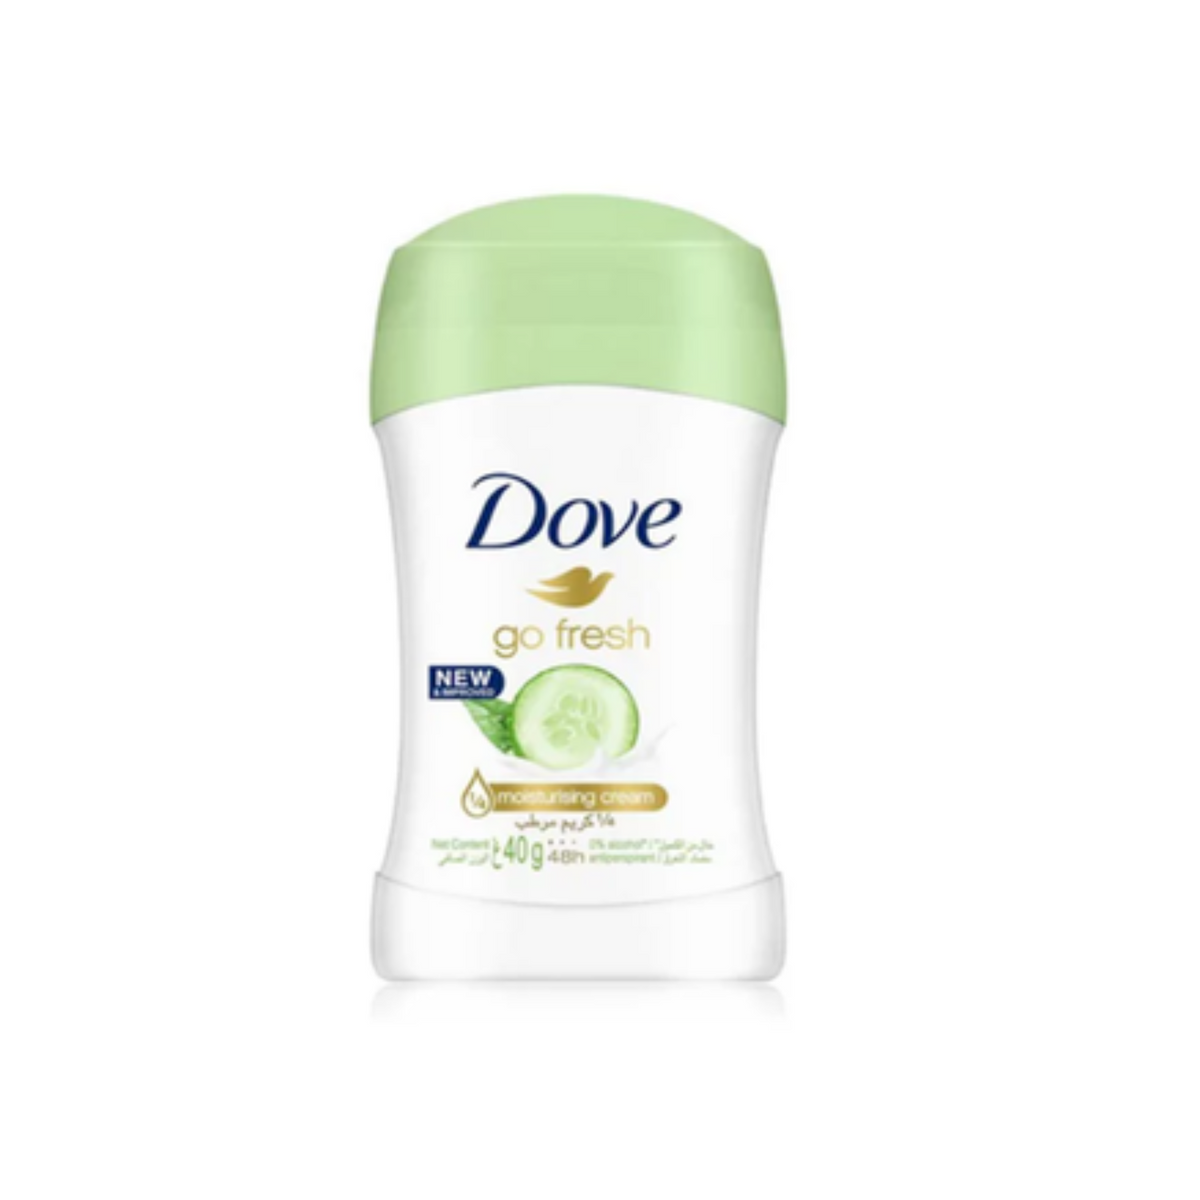 dove-go-fresh-cucumber-antiperspirant-deo-stick-philippines-40ml